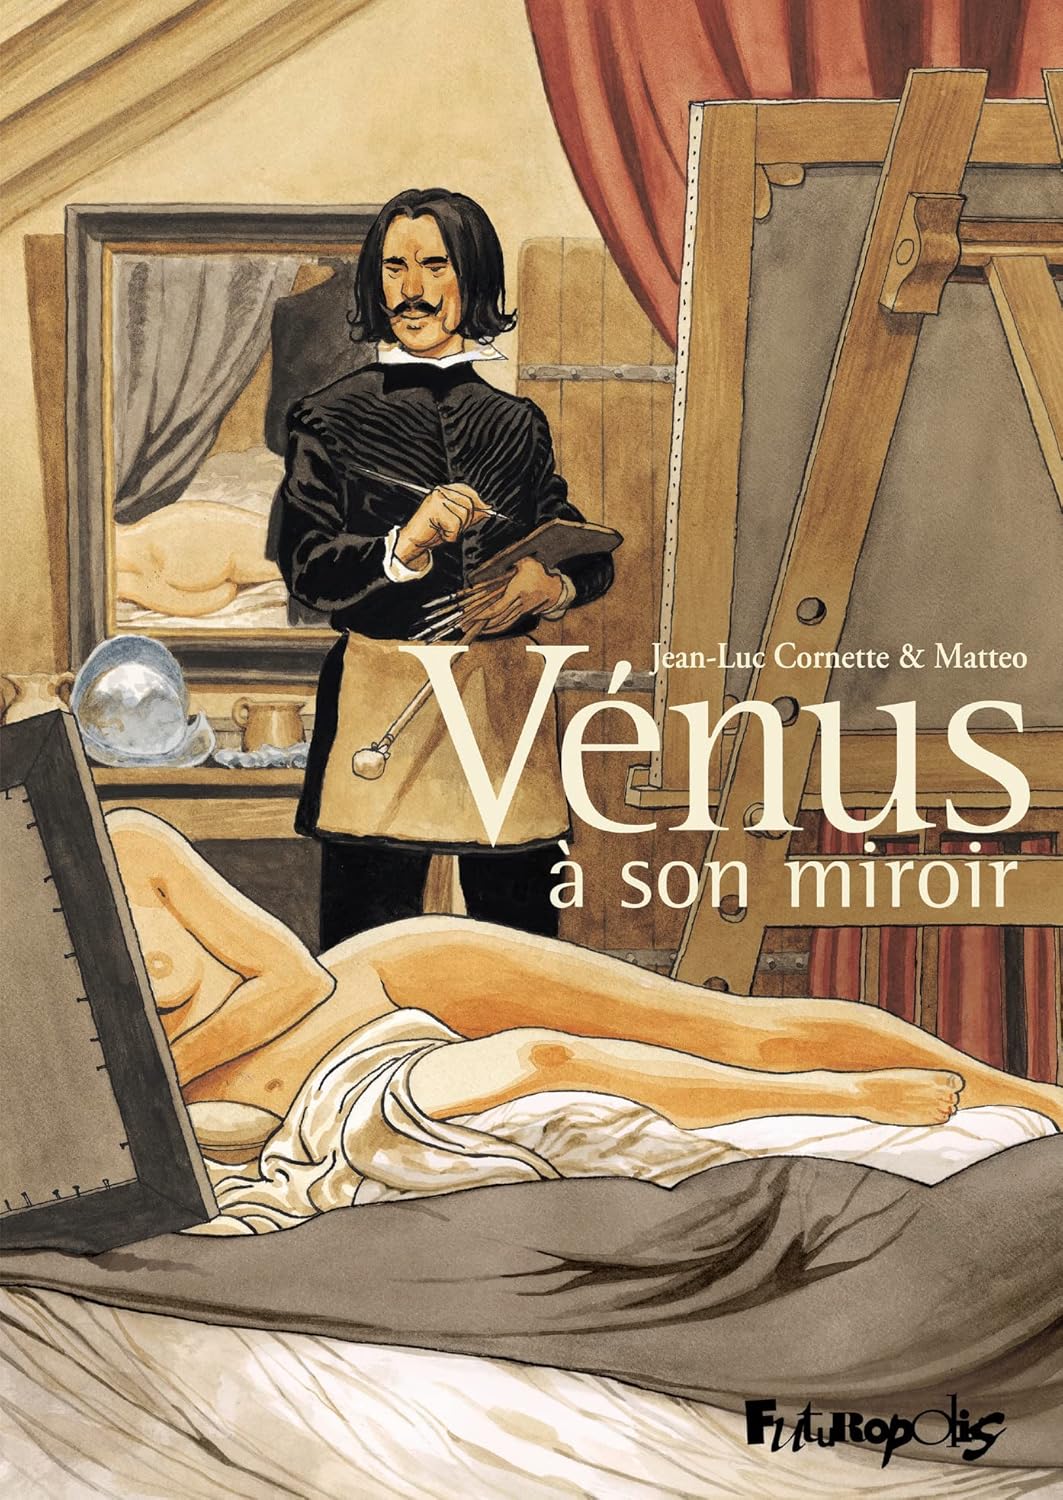 Jean-Luc Cornette, Matteo: Vénus à son miroir (Hardcover, français language, Futuropolis)